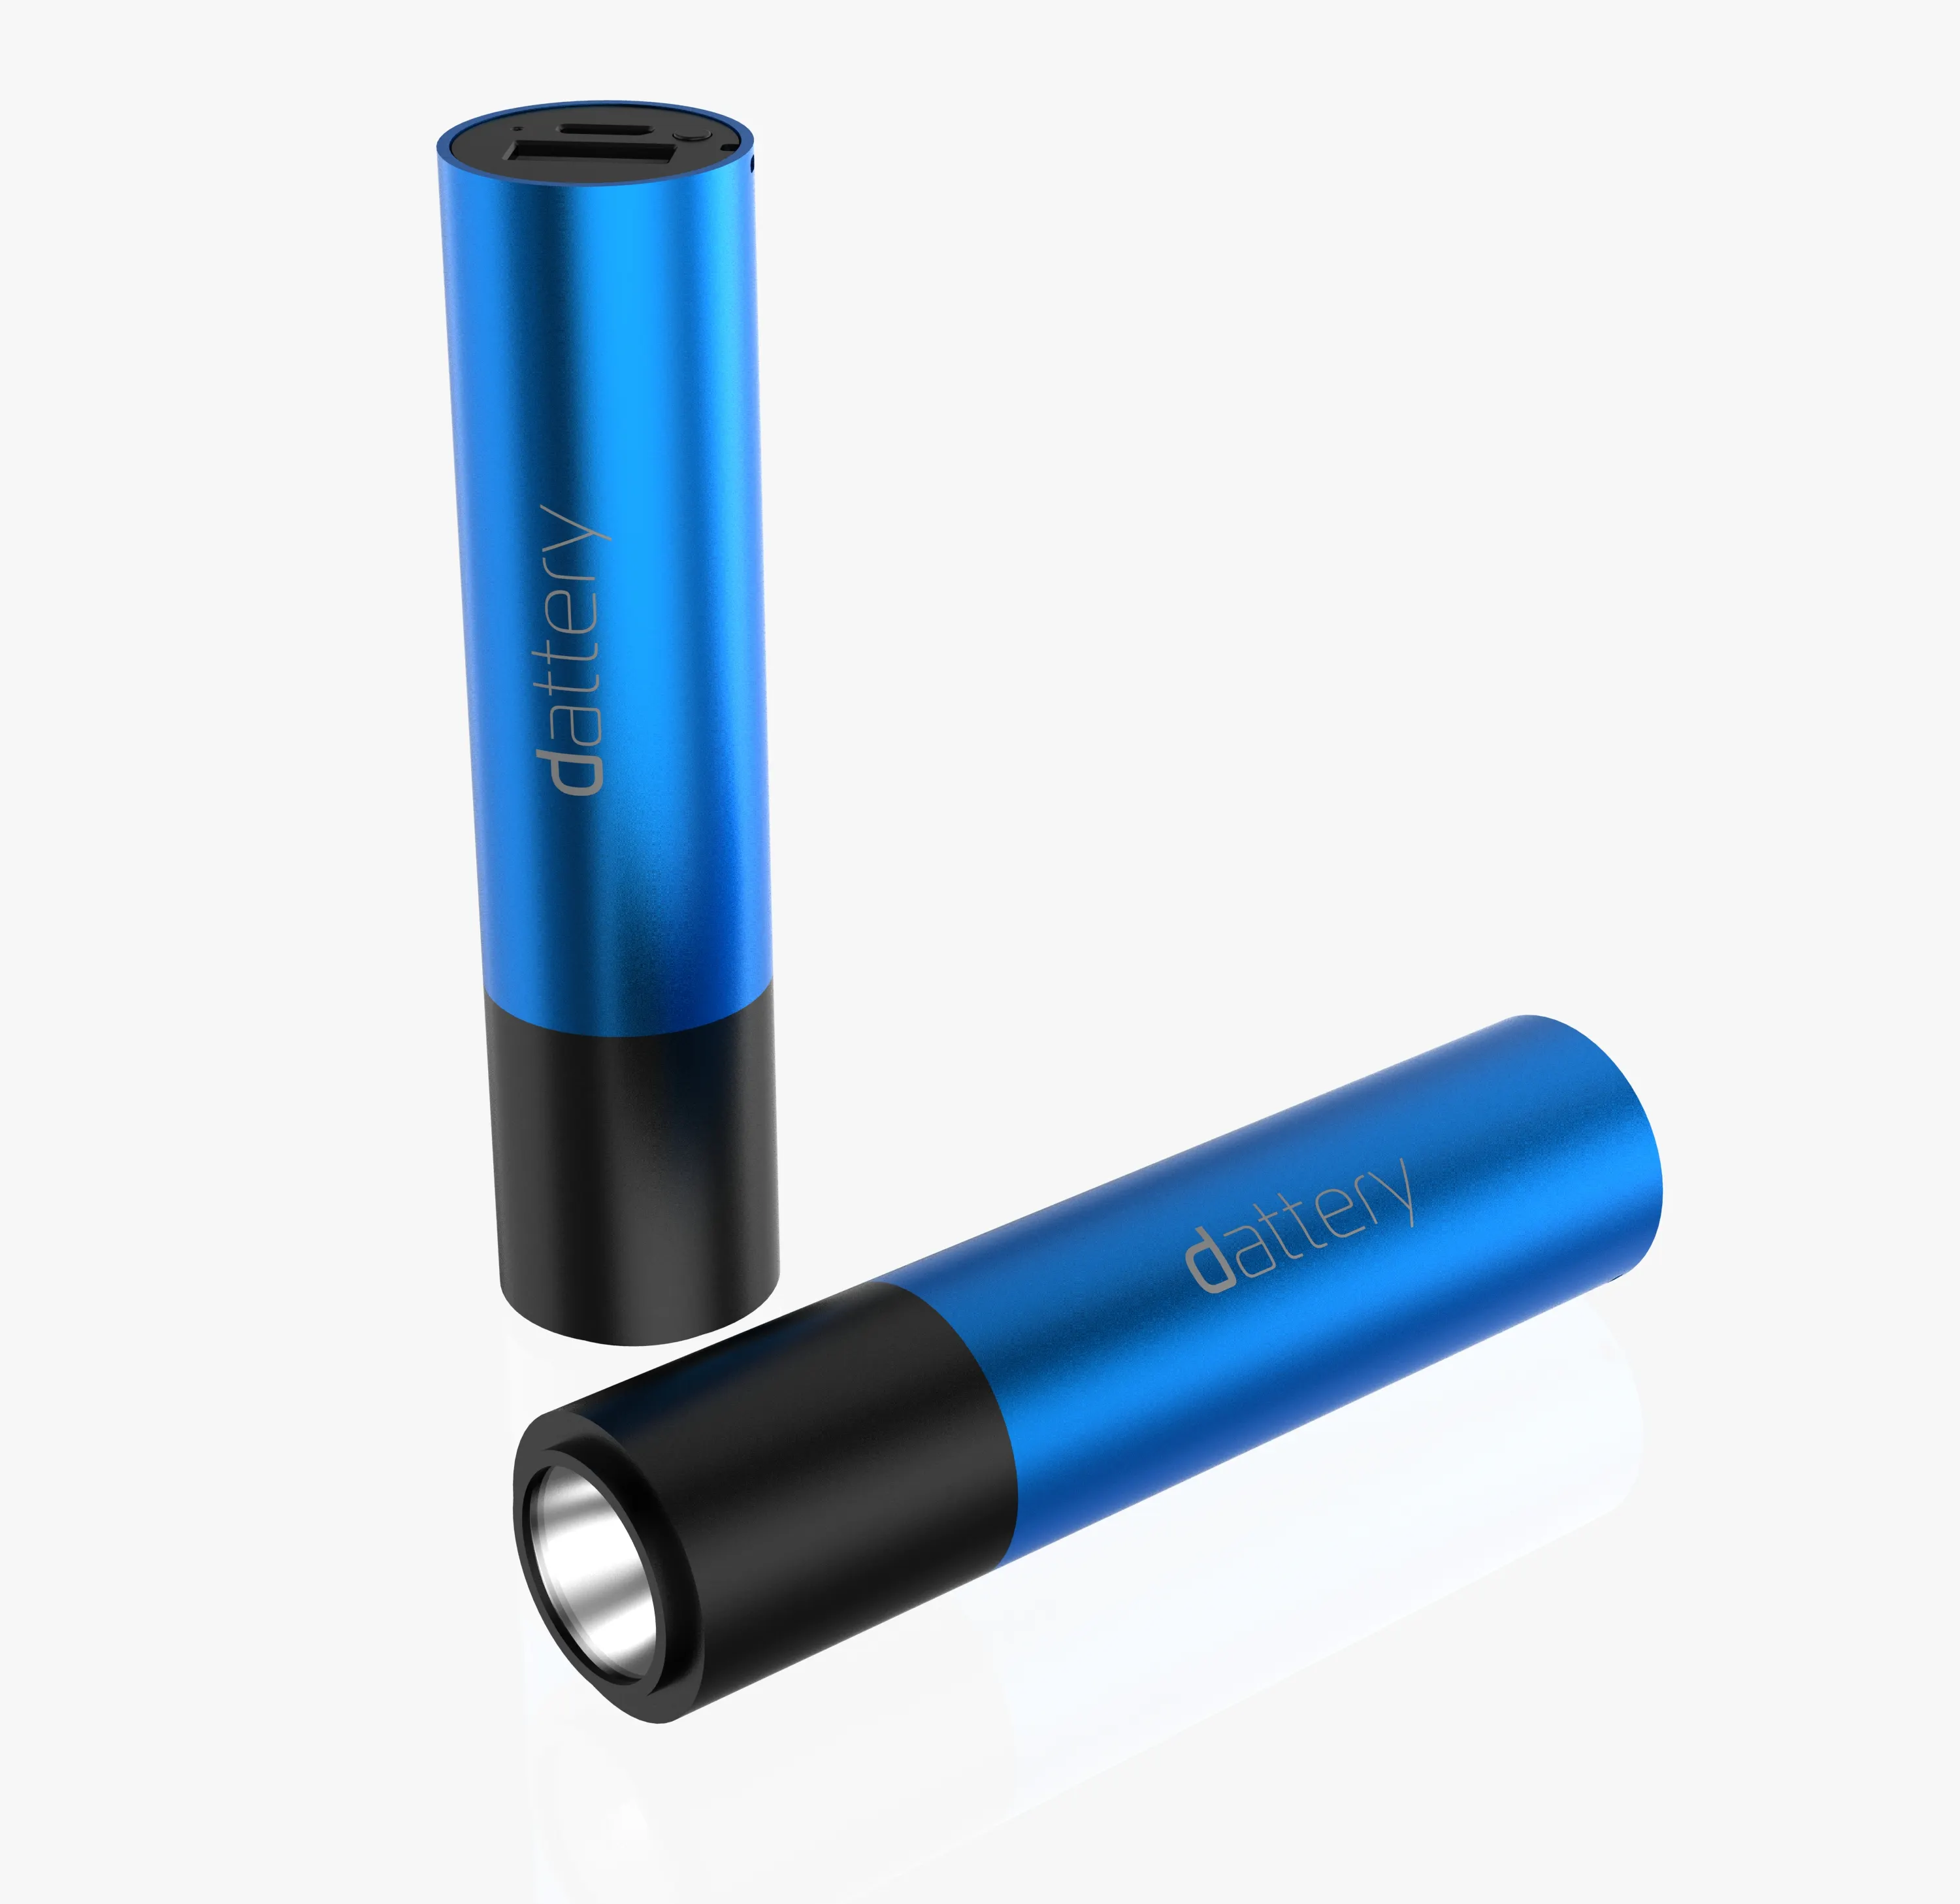 Economici piccoli oggetti manovella powerbank 2600 mah banca di potere della luce innovativa contenitore di imballaggio smart battery charger con portachiavi portatile